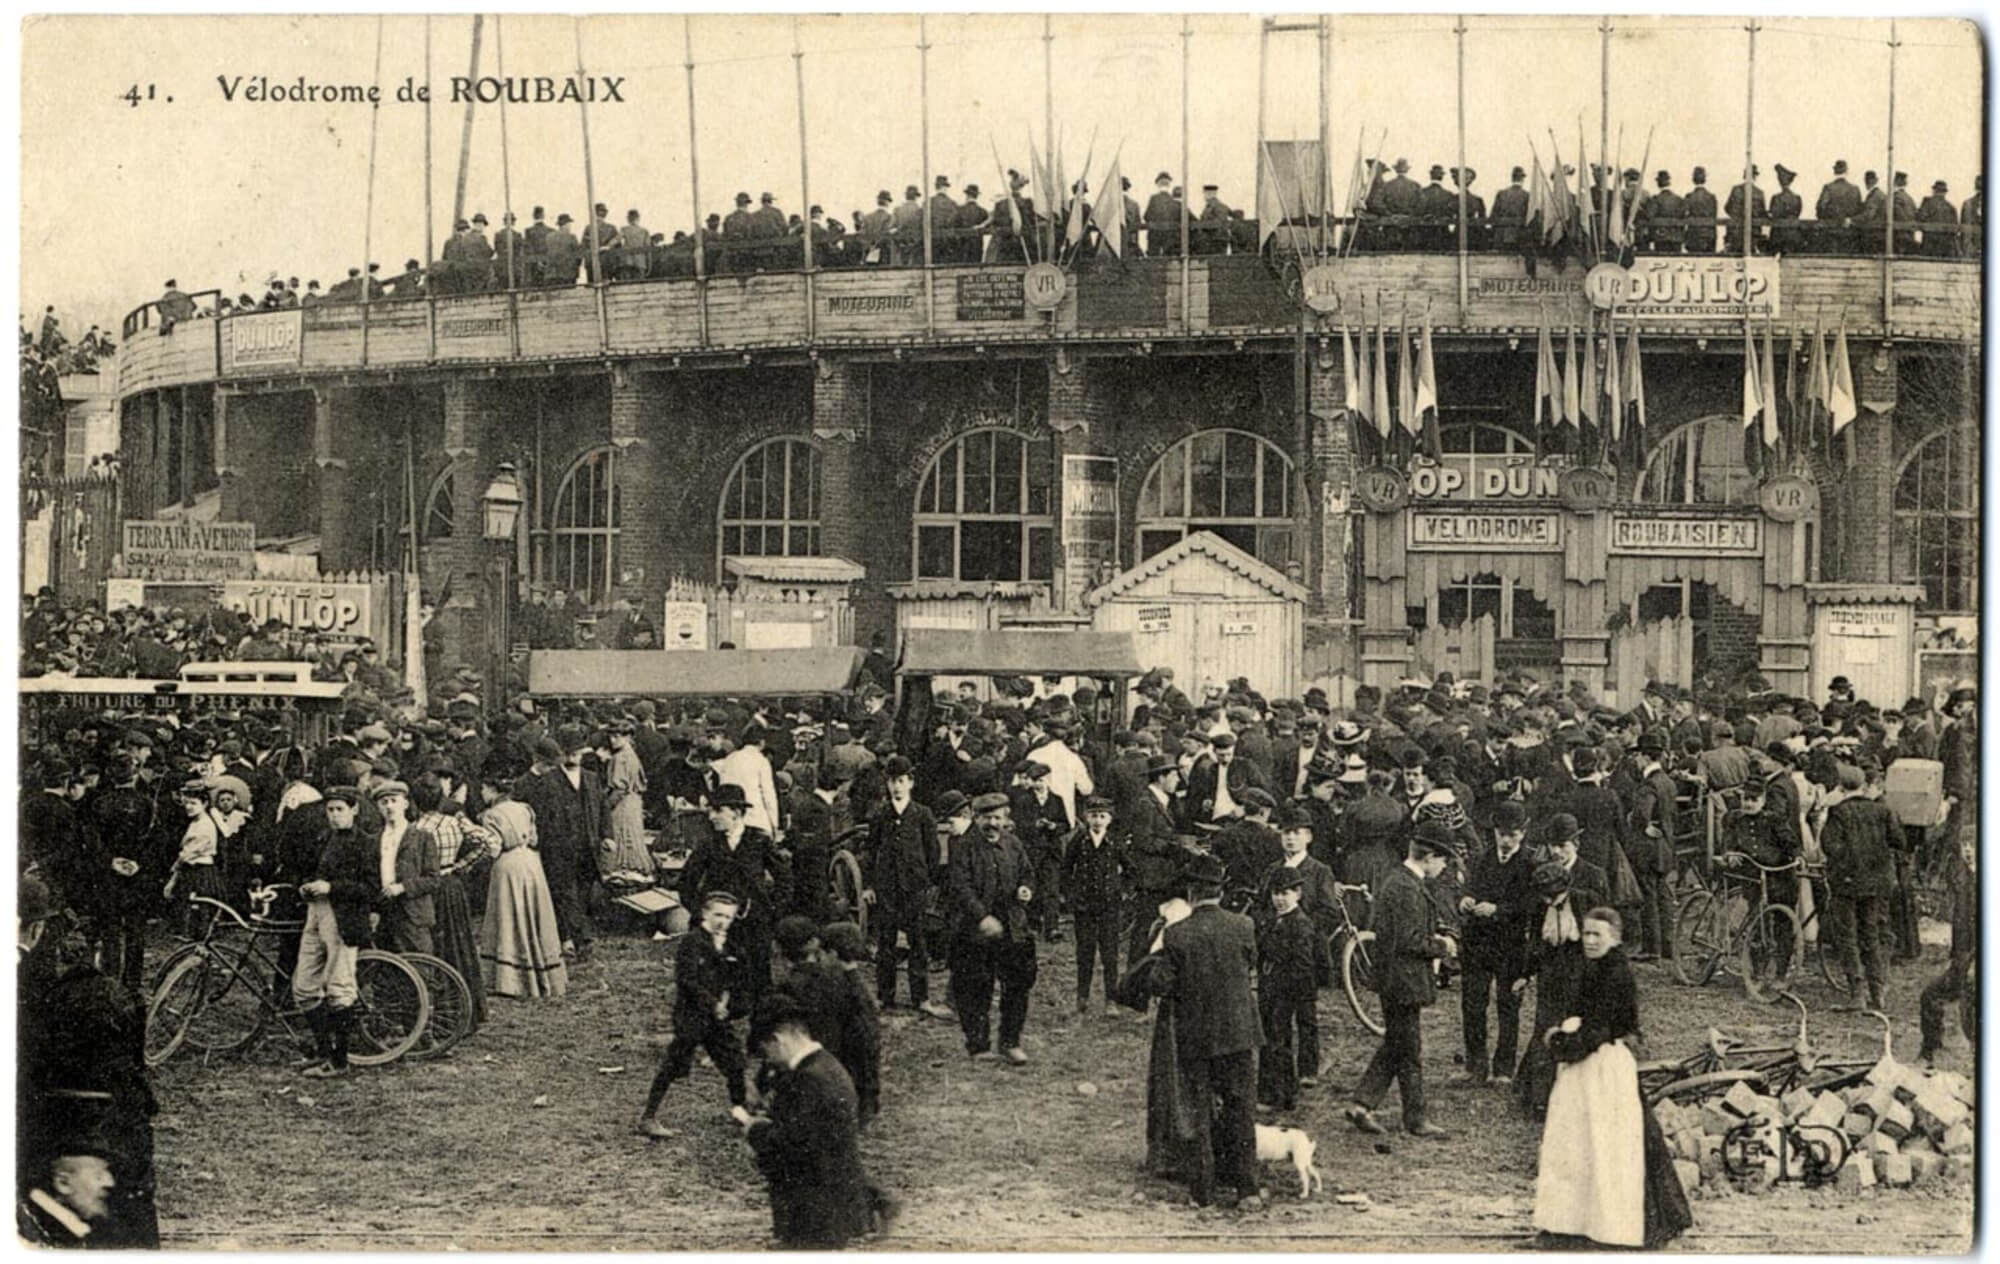 El ambiente en el velódromo de Roubaix unos años más tarde (1908)